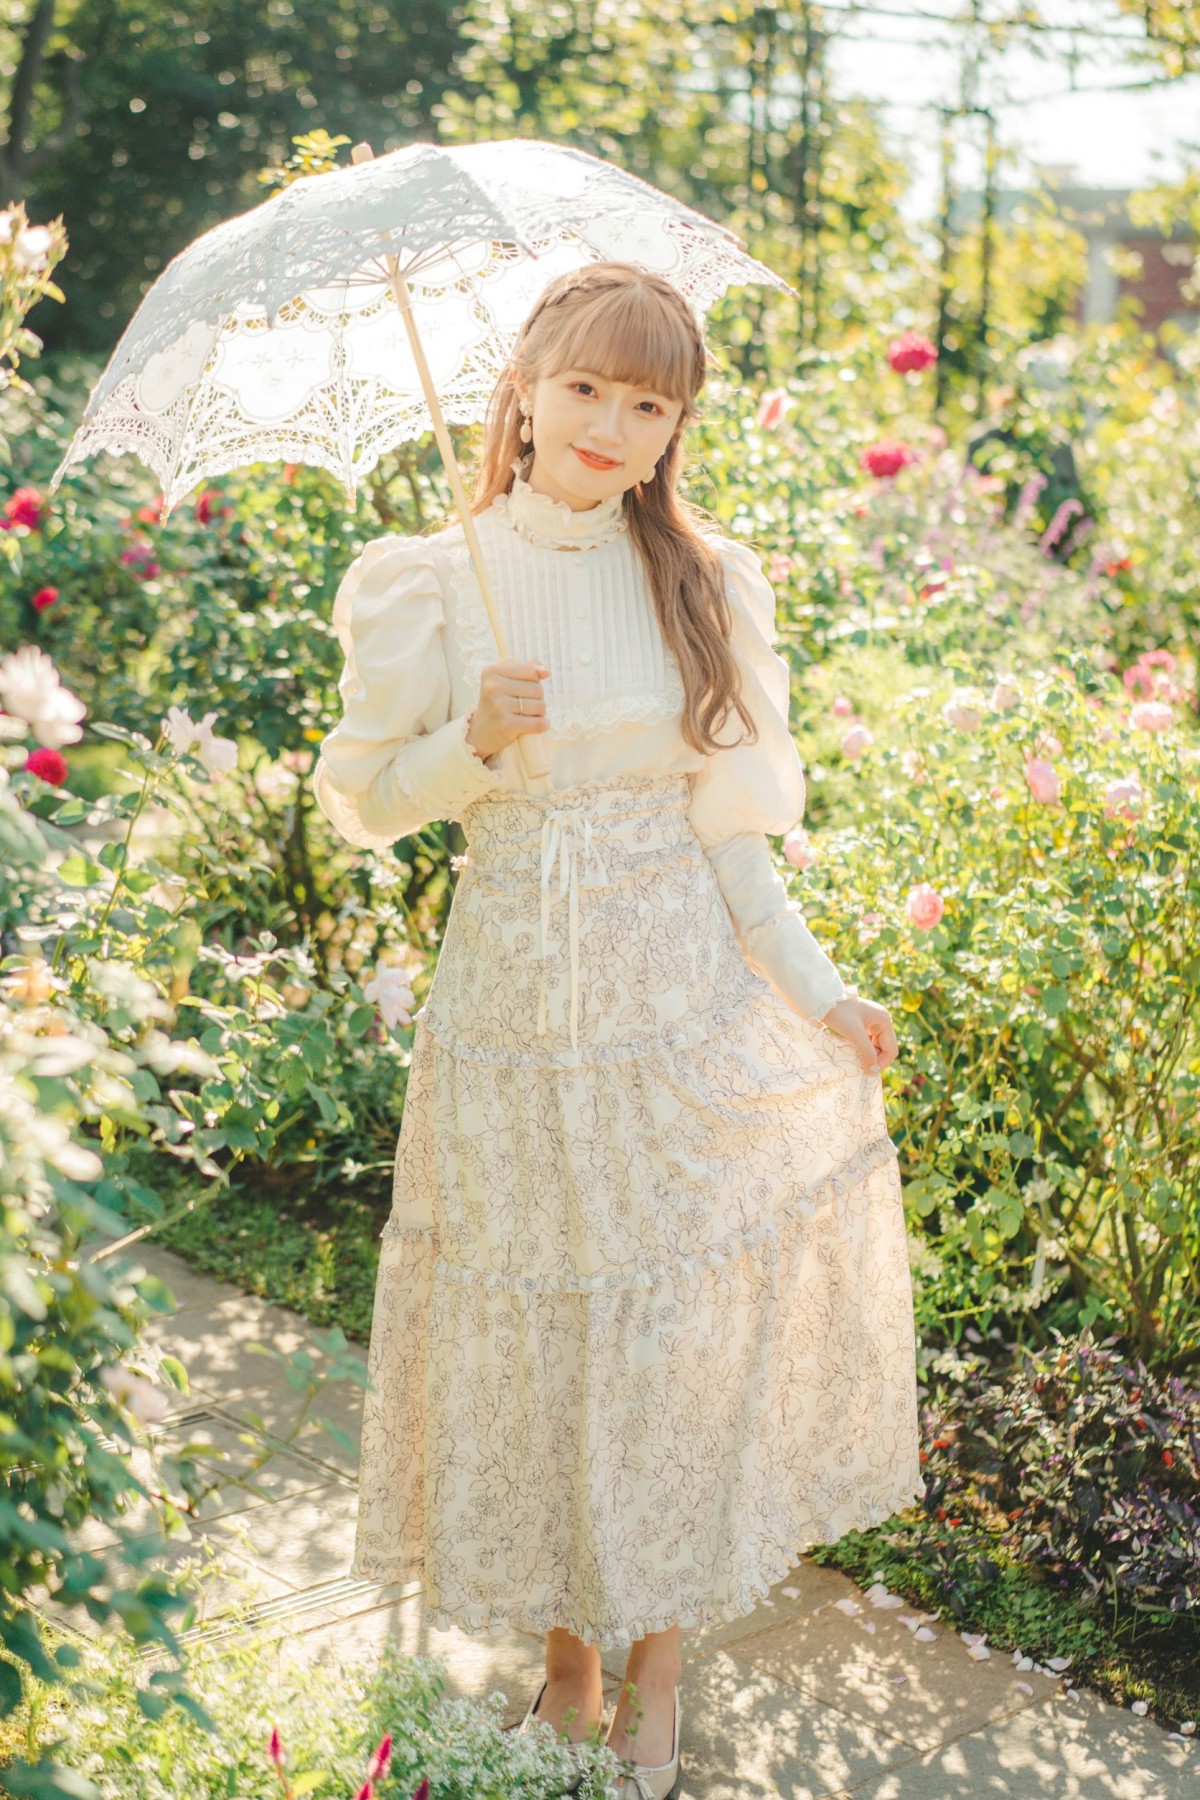 NGT48中井りか、自腹100万円元手のアパレルブランド1・31販売開始「女の子は誰でもお姫様になれる」 | ORICON NEWS